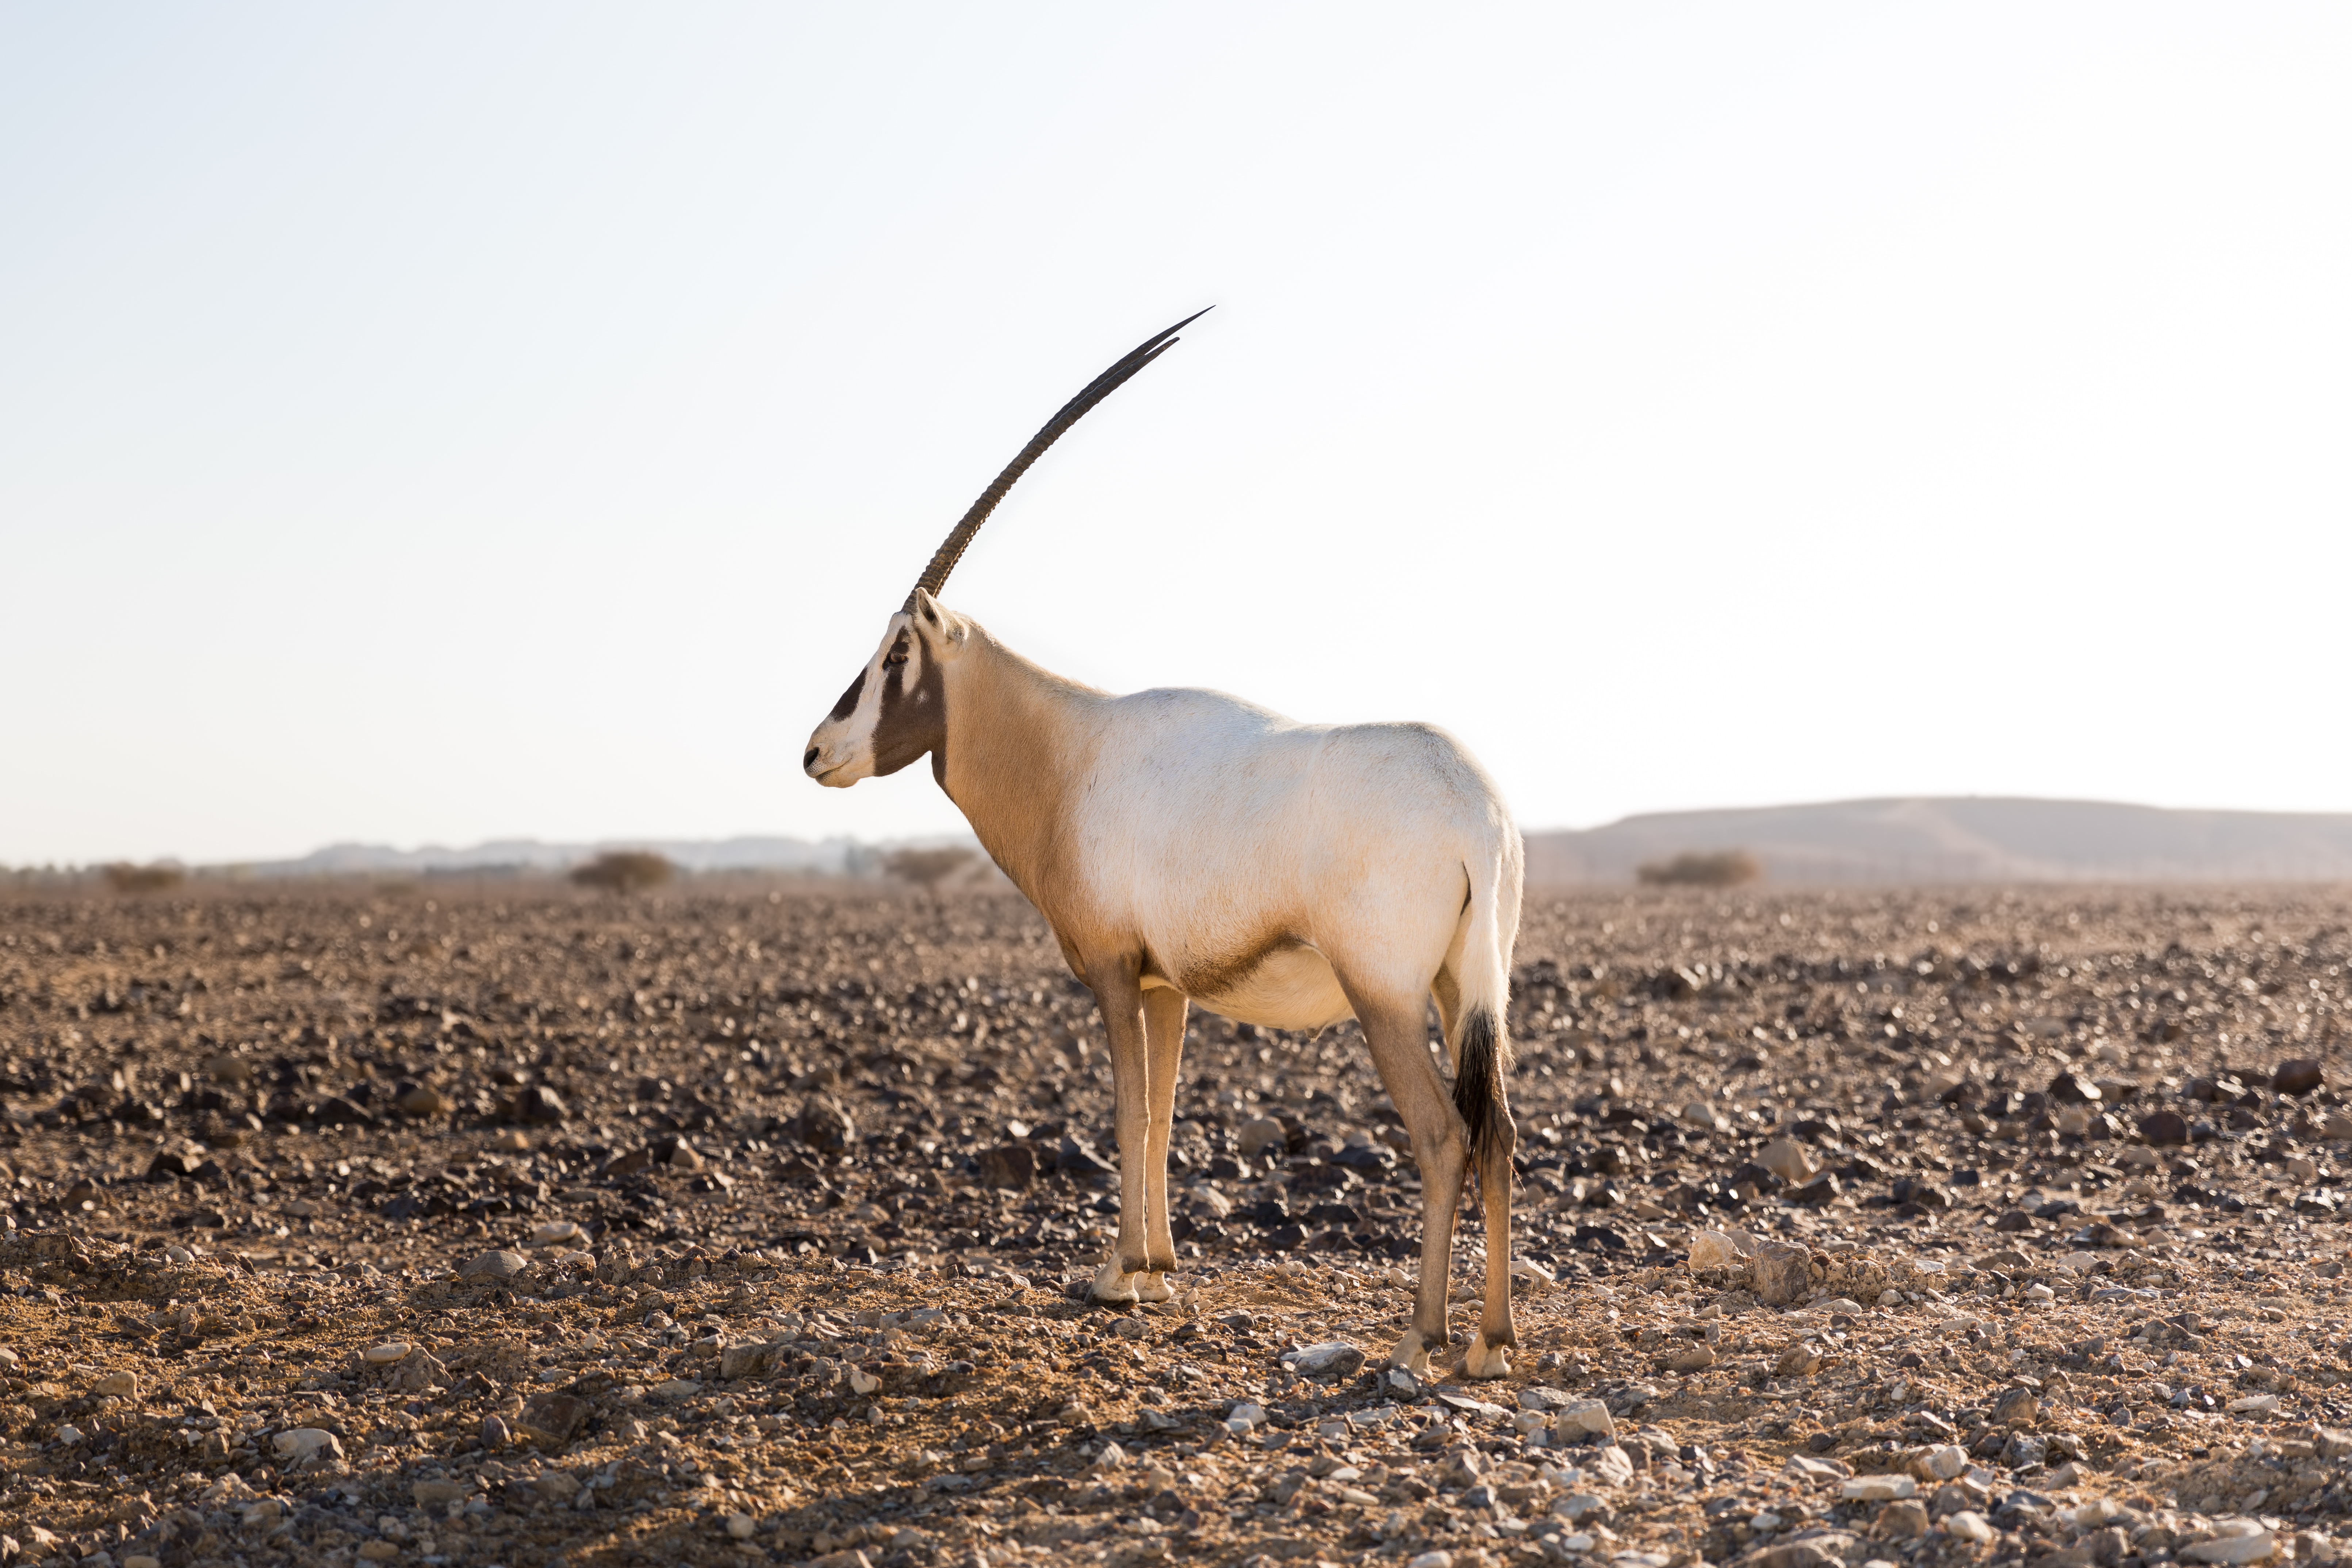 Antelope ranch in the Negev Desert, Israel